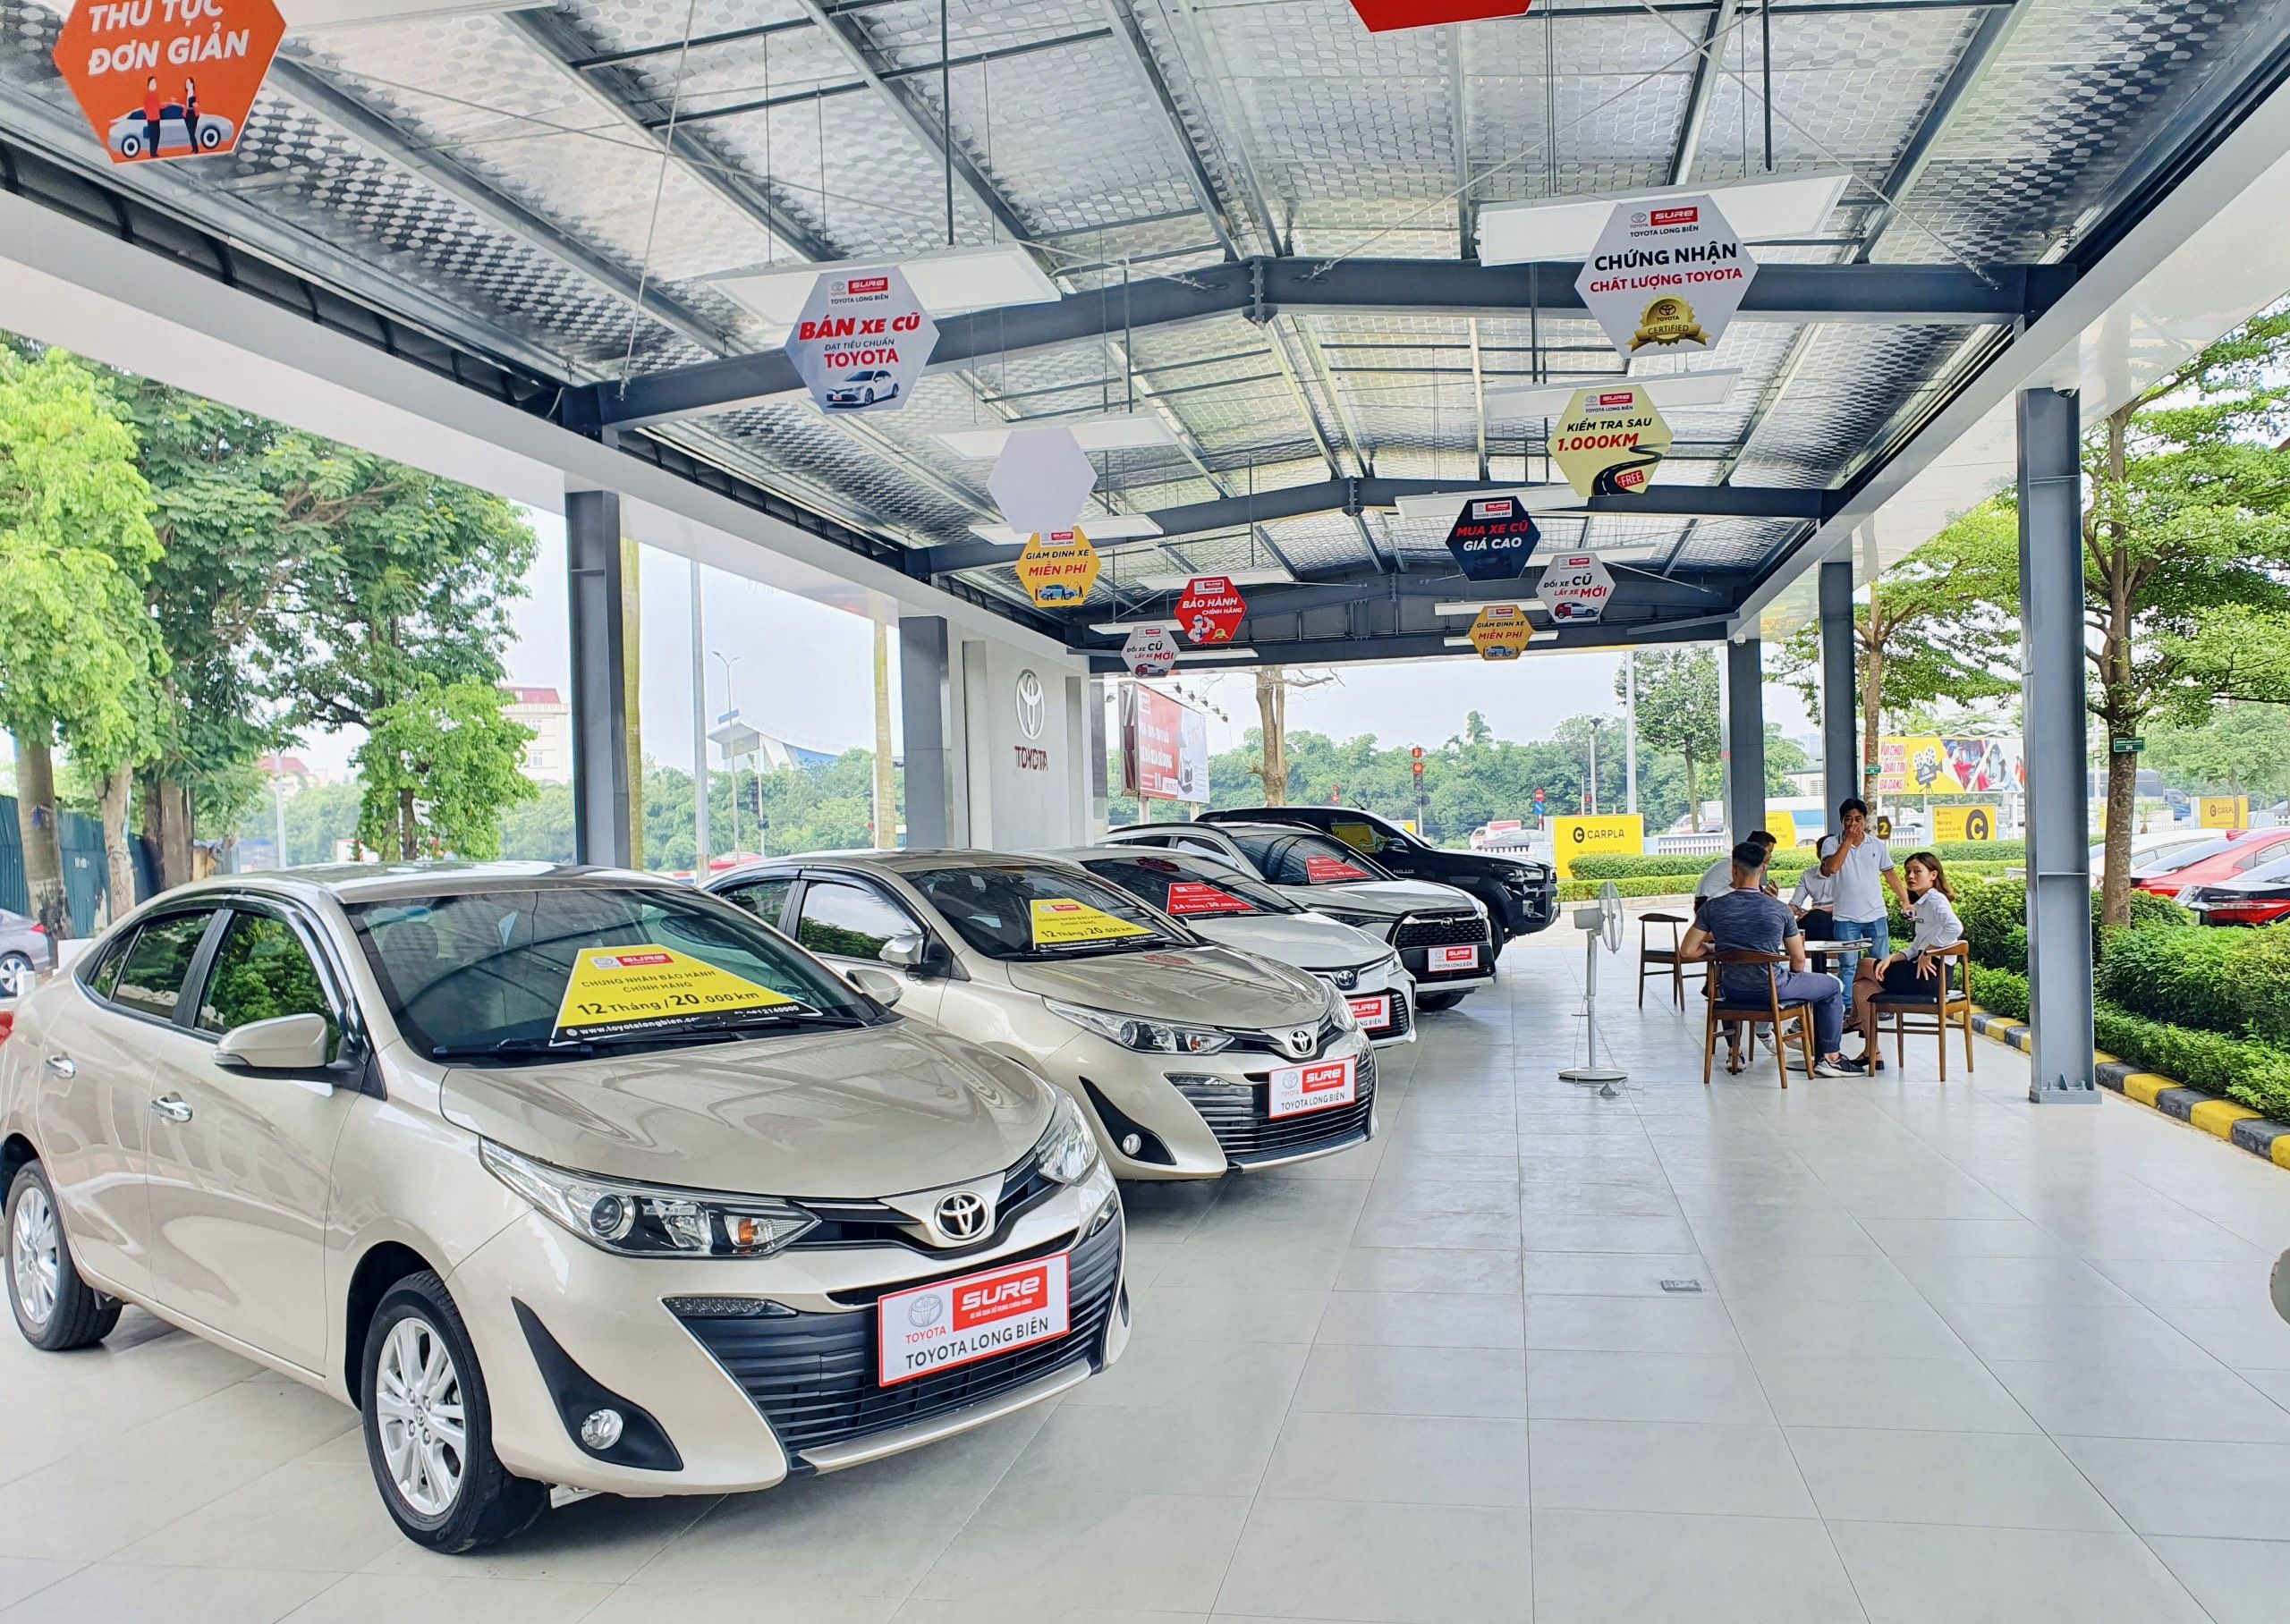 Chào mừng bạn đến với Showroom Toyota Sure - Toyota Long Biên!